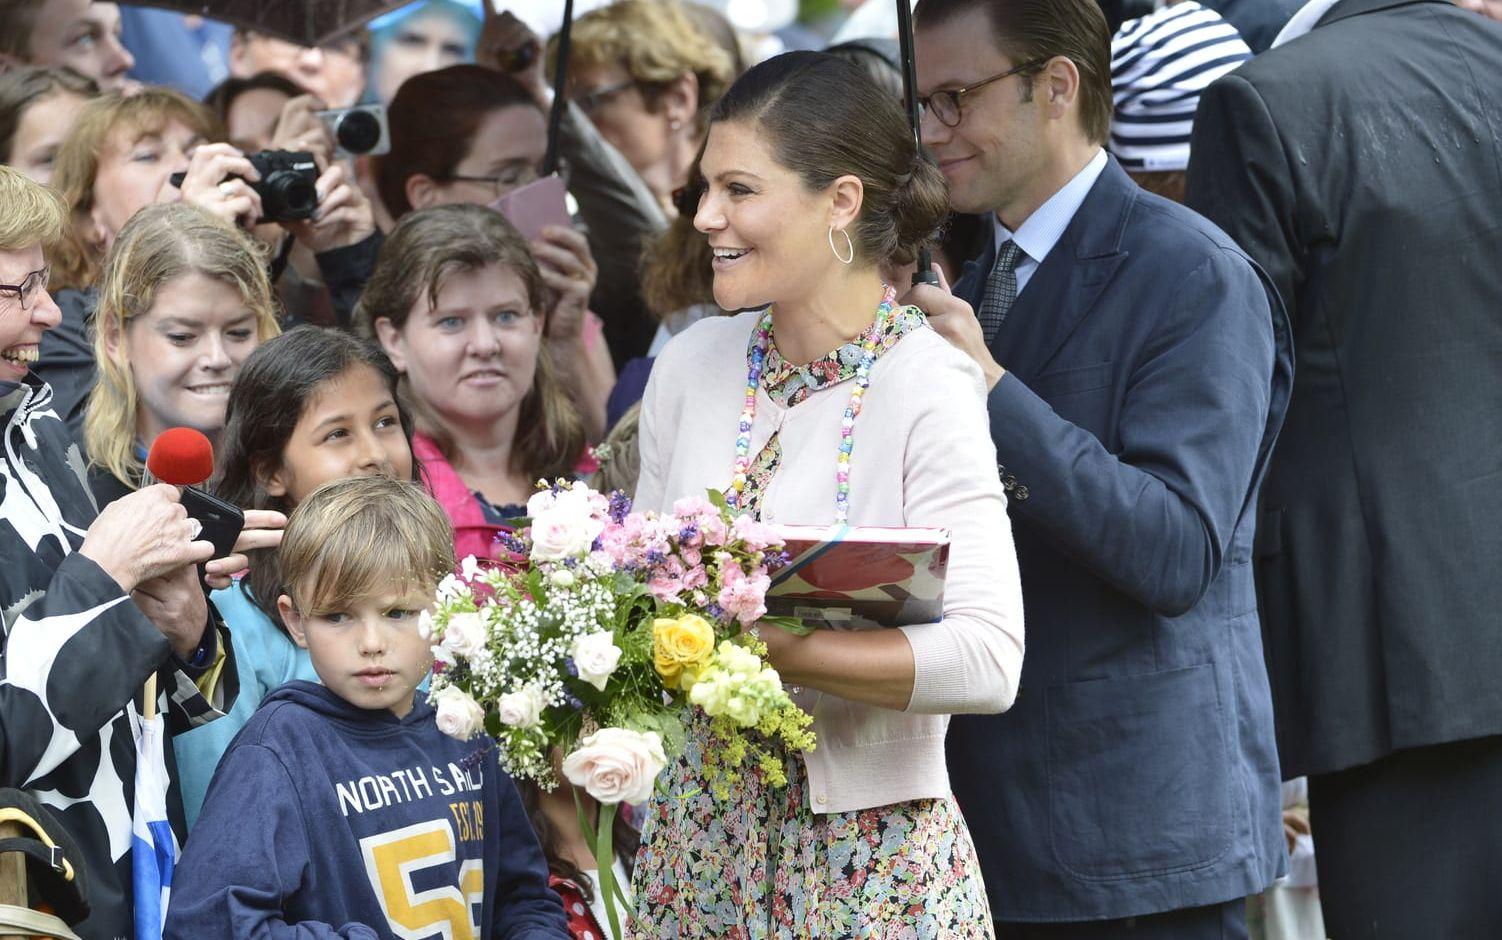 2015 när kronprinsessan fyllde 38 år regnade det en del så prins Daniel höll ett skyddande paraply över henne när hon tog emot folkets hyllningar. 